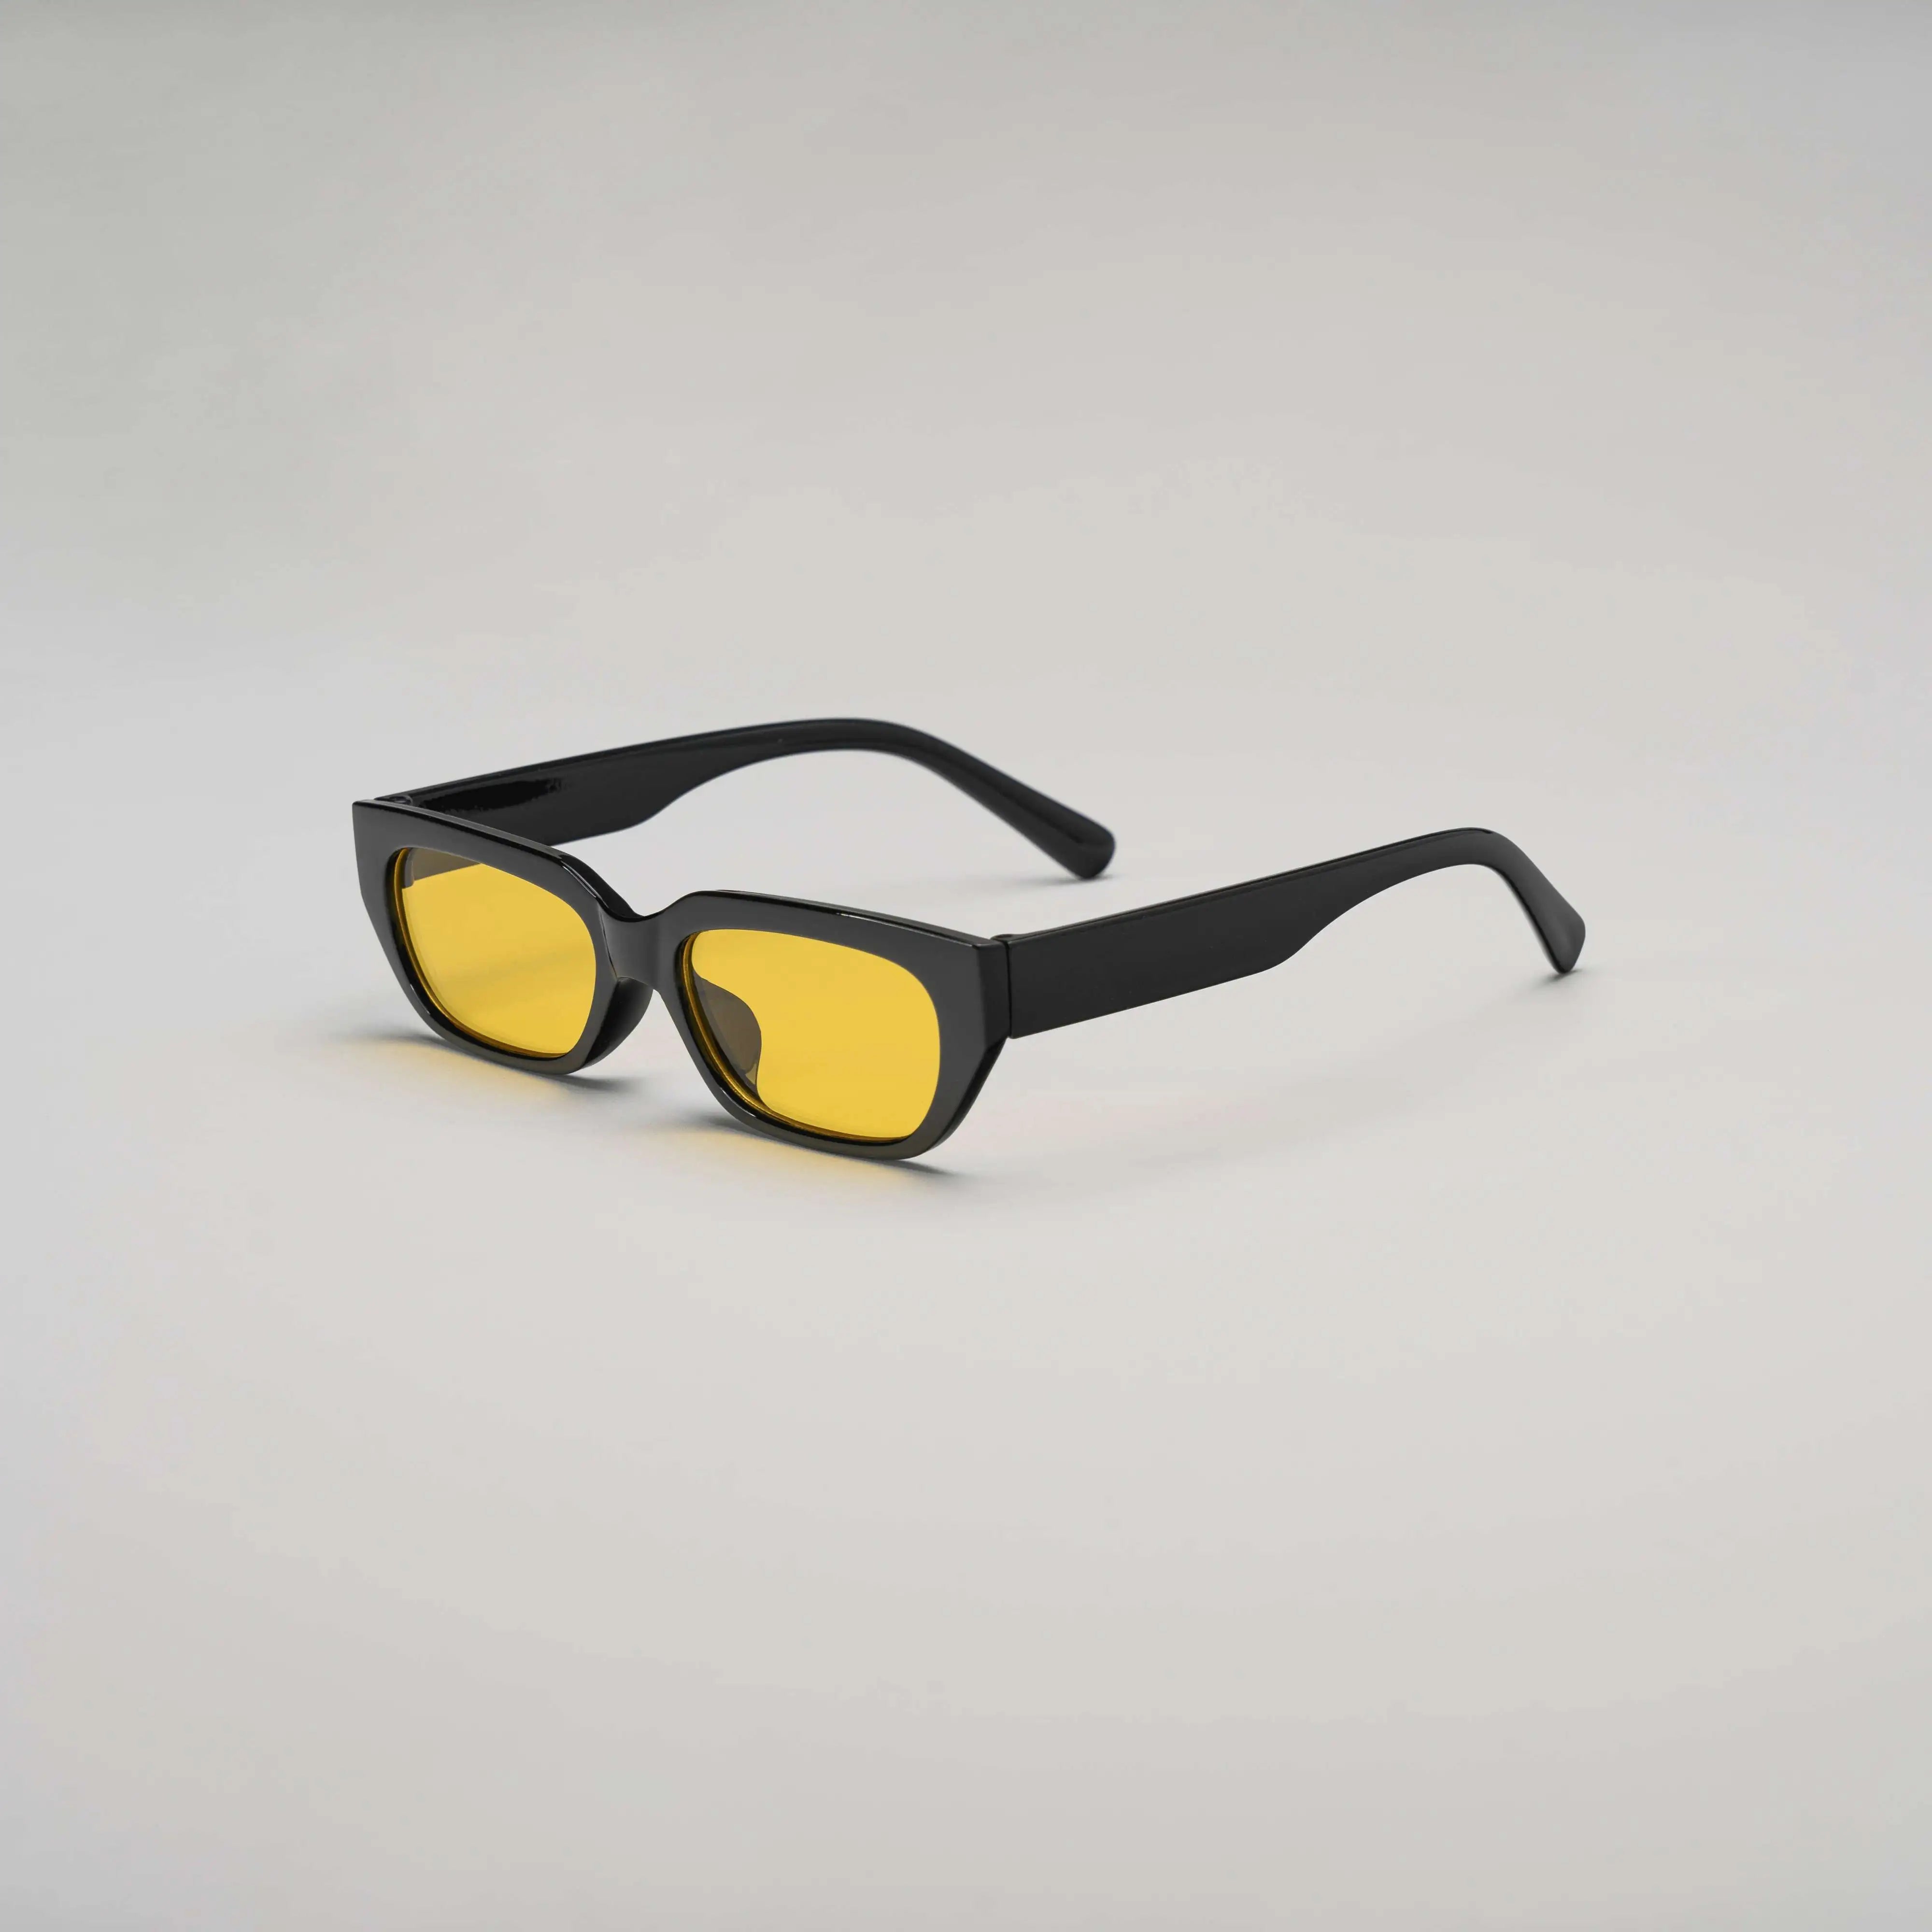 'Last Entry' Retro Sunglasses in Black & Yellow